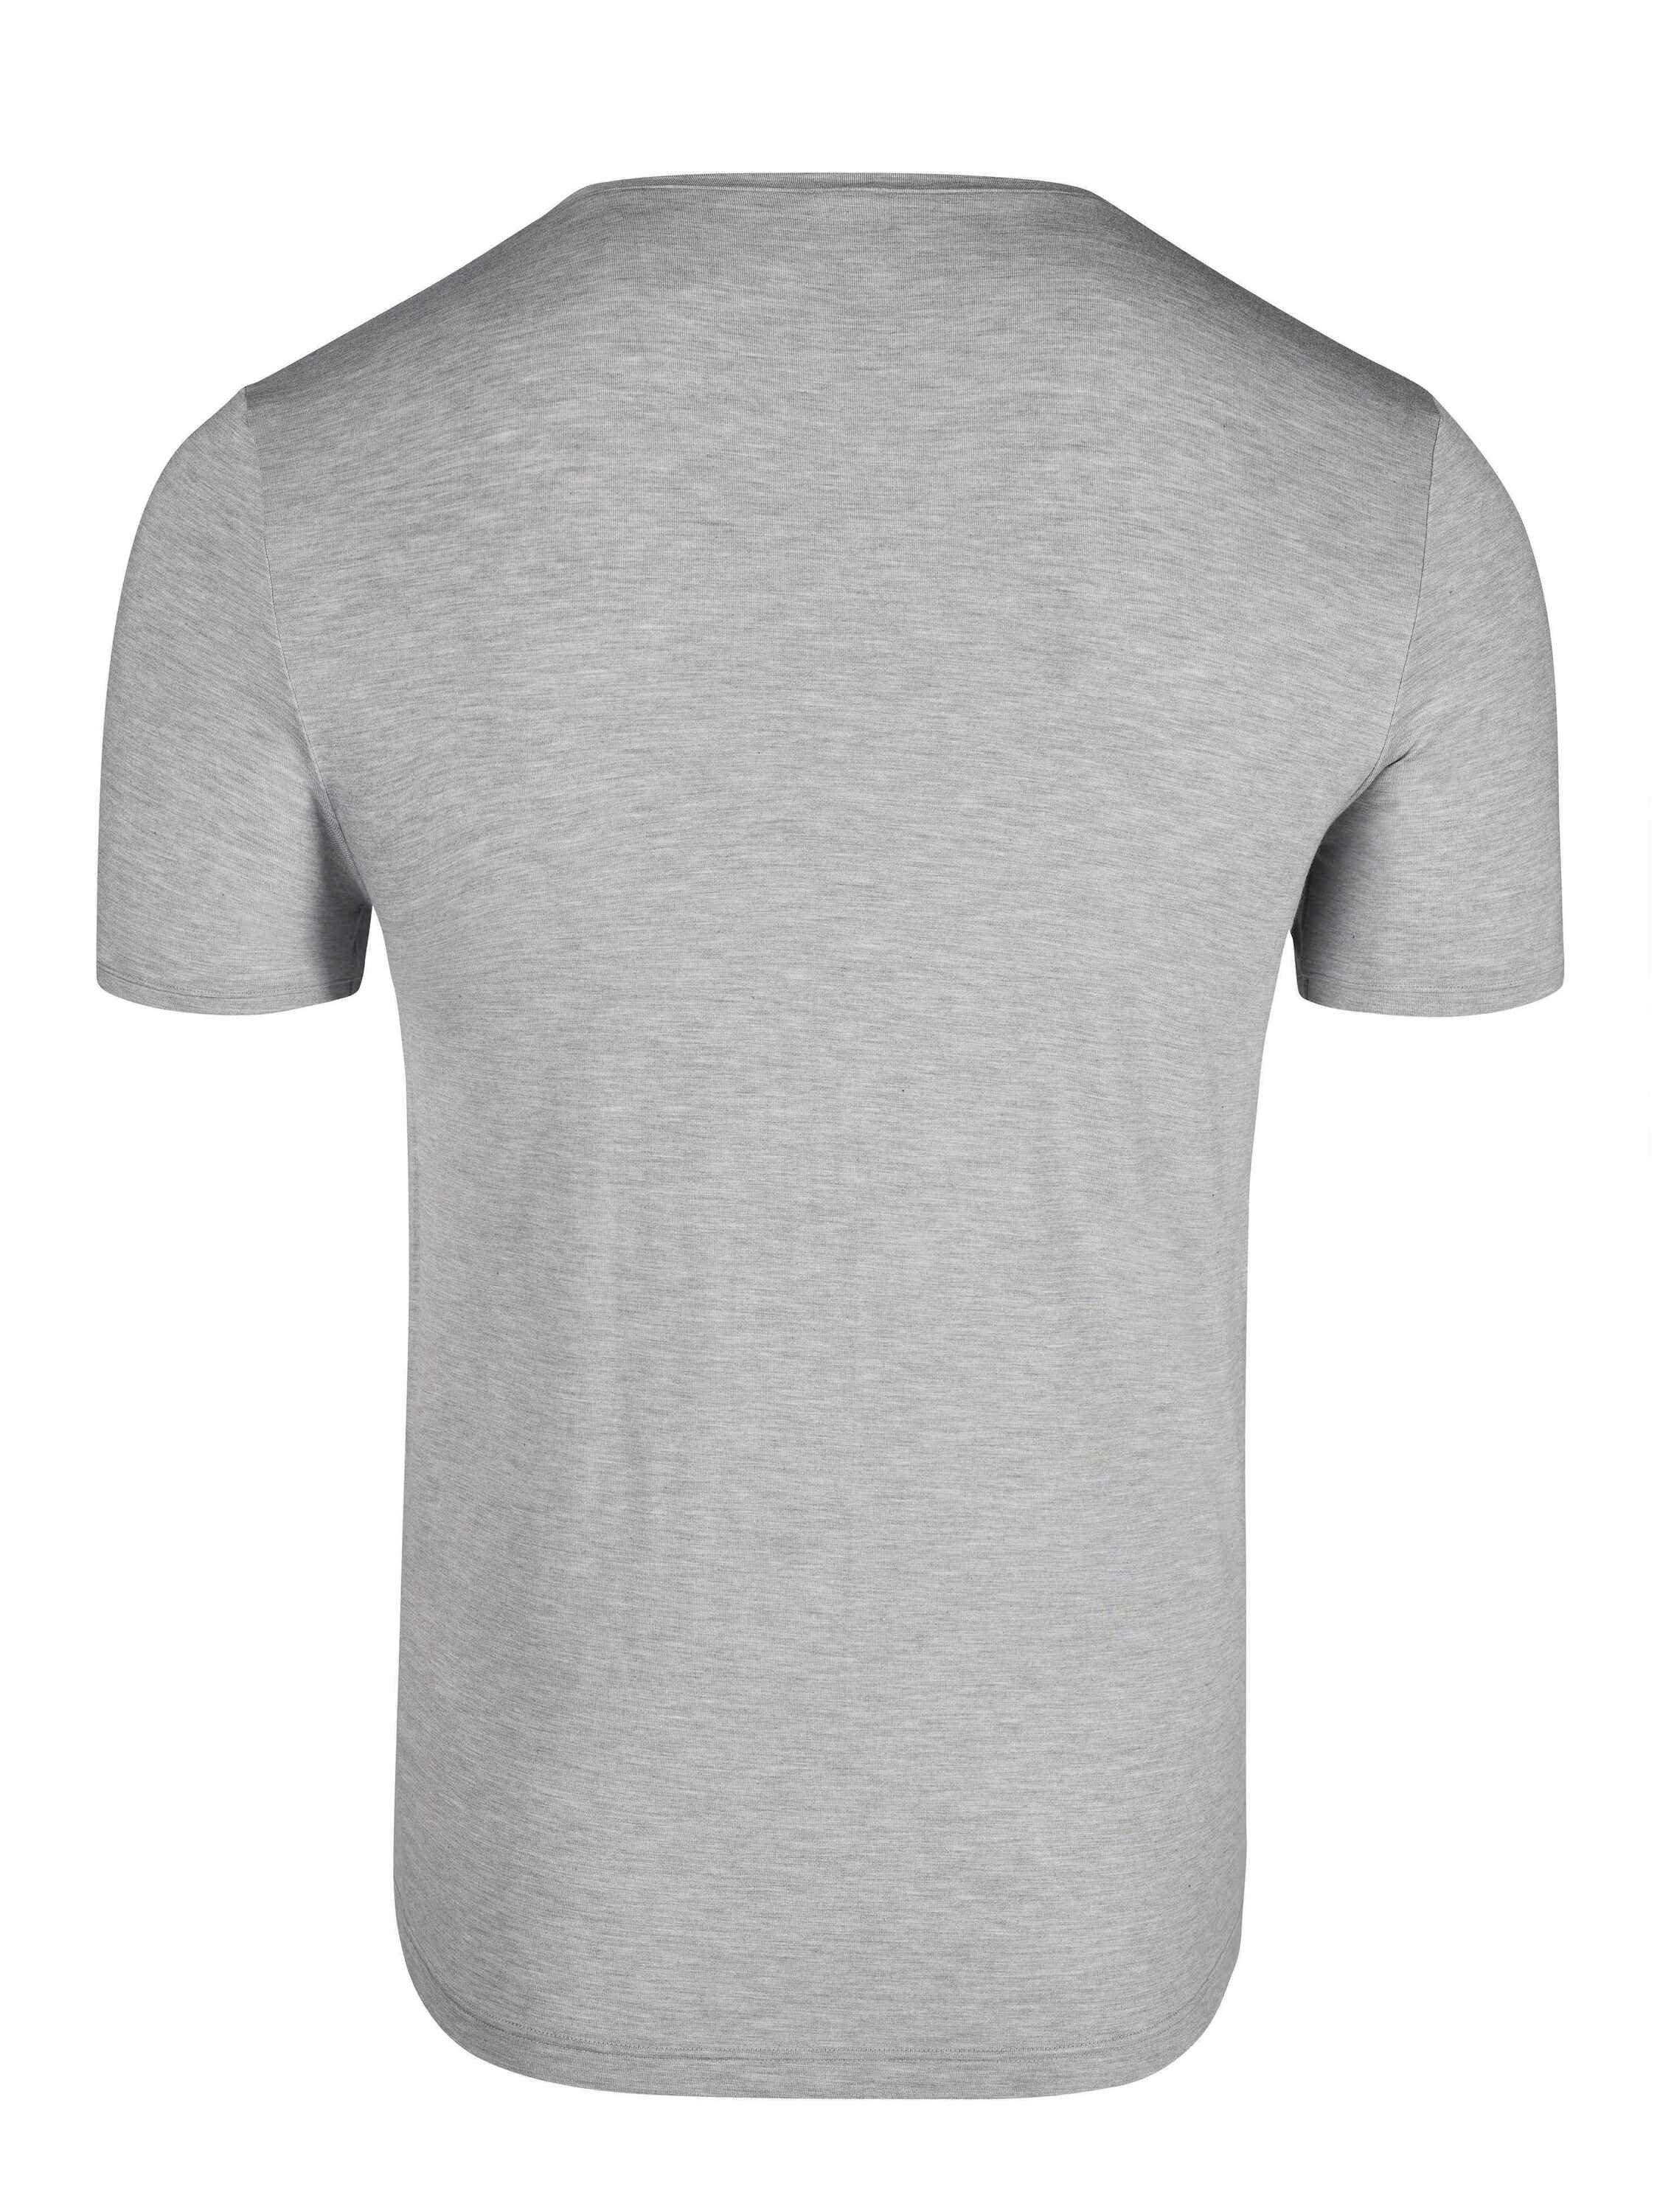 Wäsche/Bademode Unterhemden Skiny Unterziehshirt Kurzarm-Shirt, V-Ausschnitt (1 Stück)